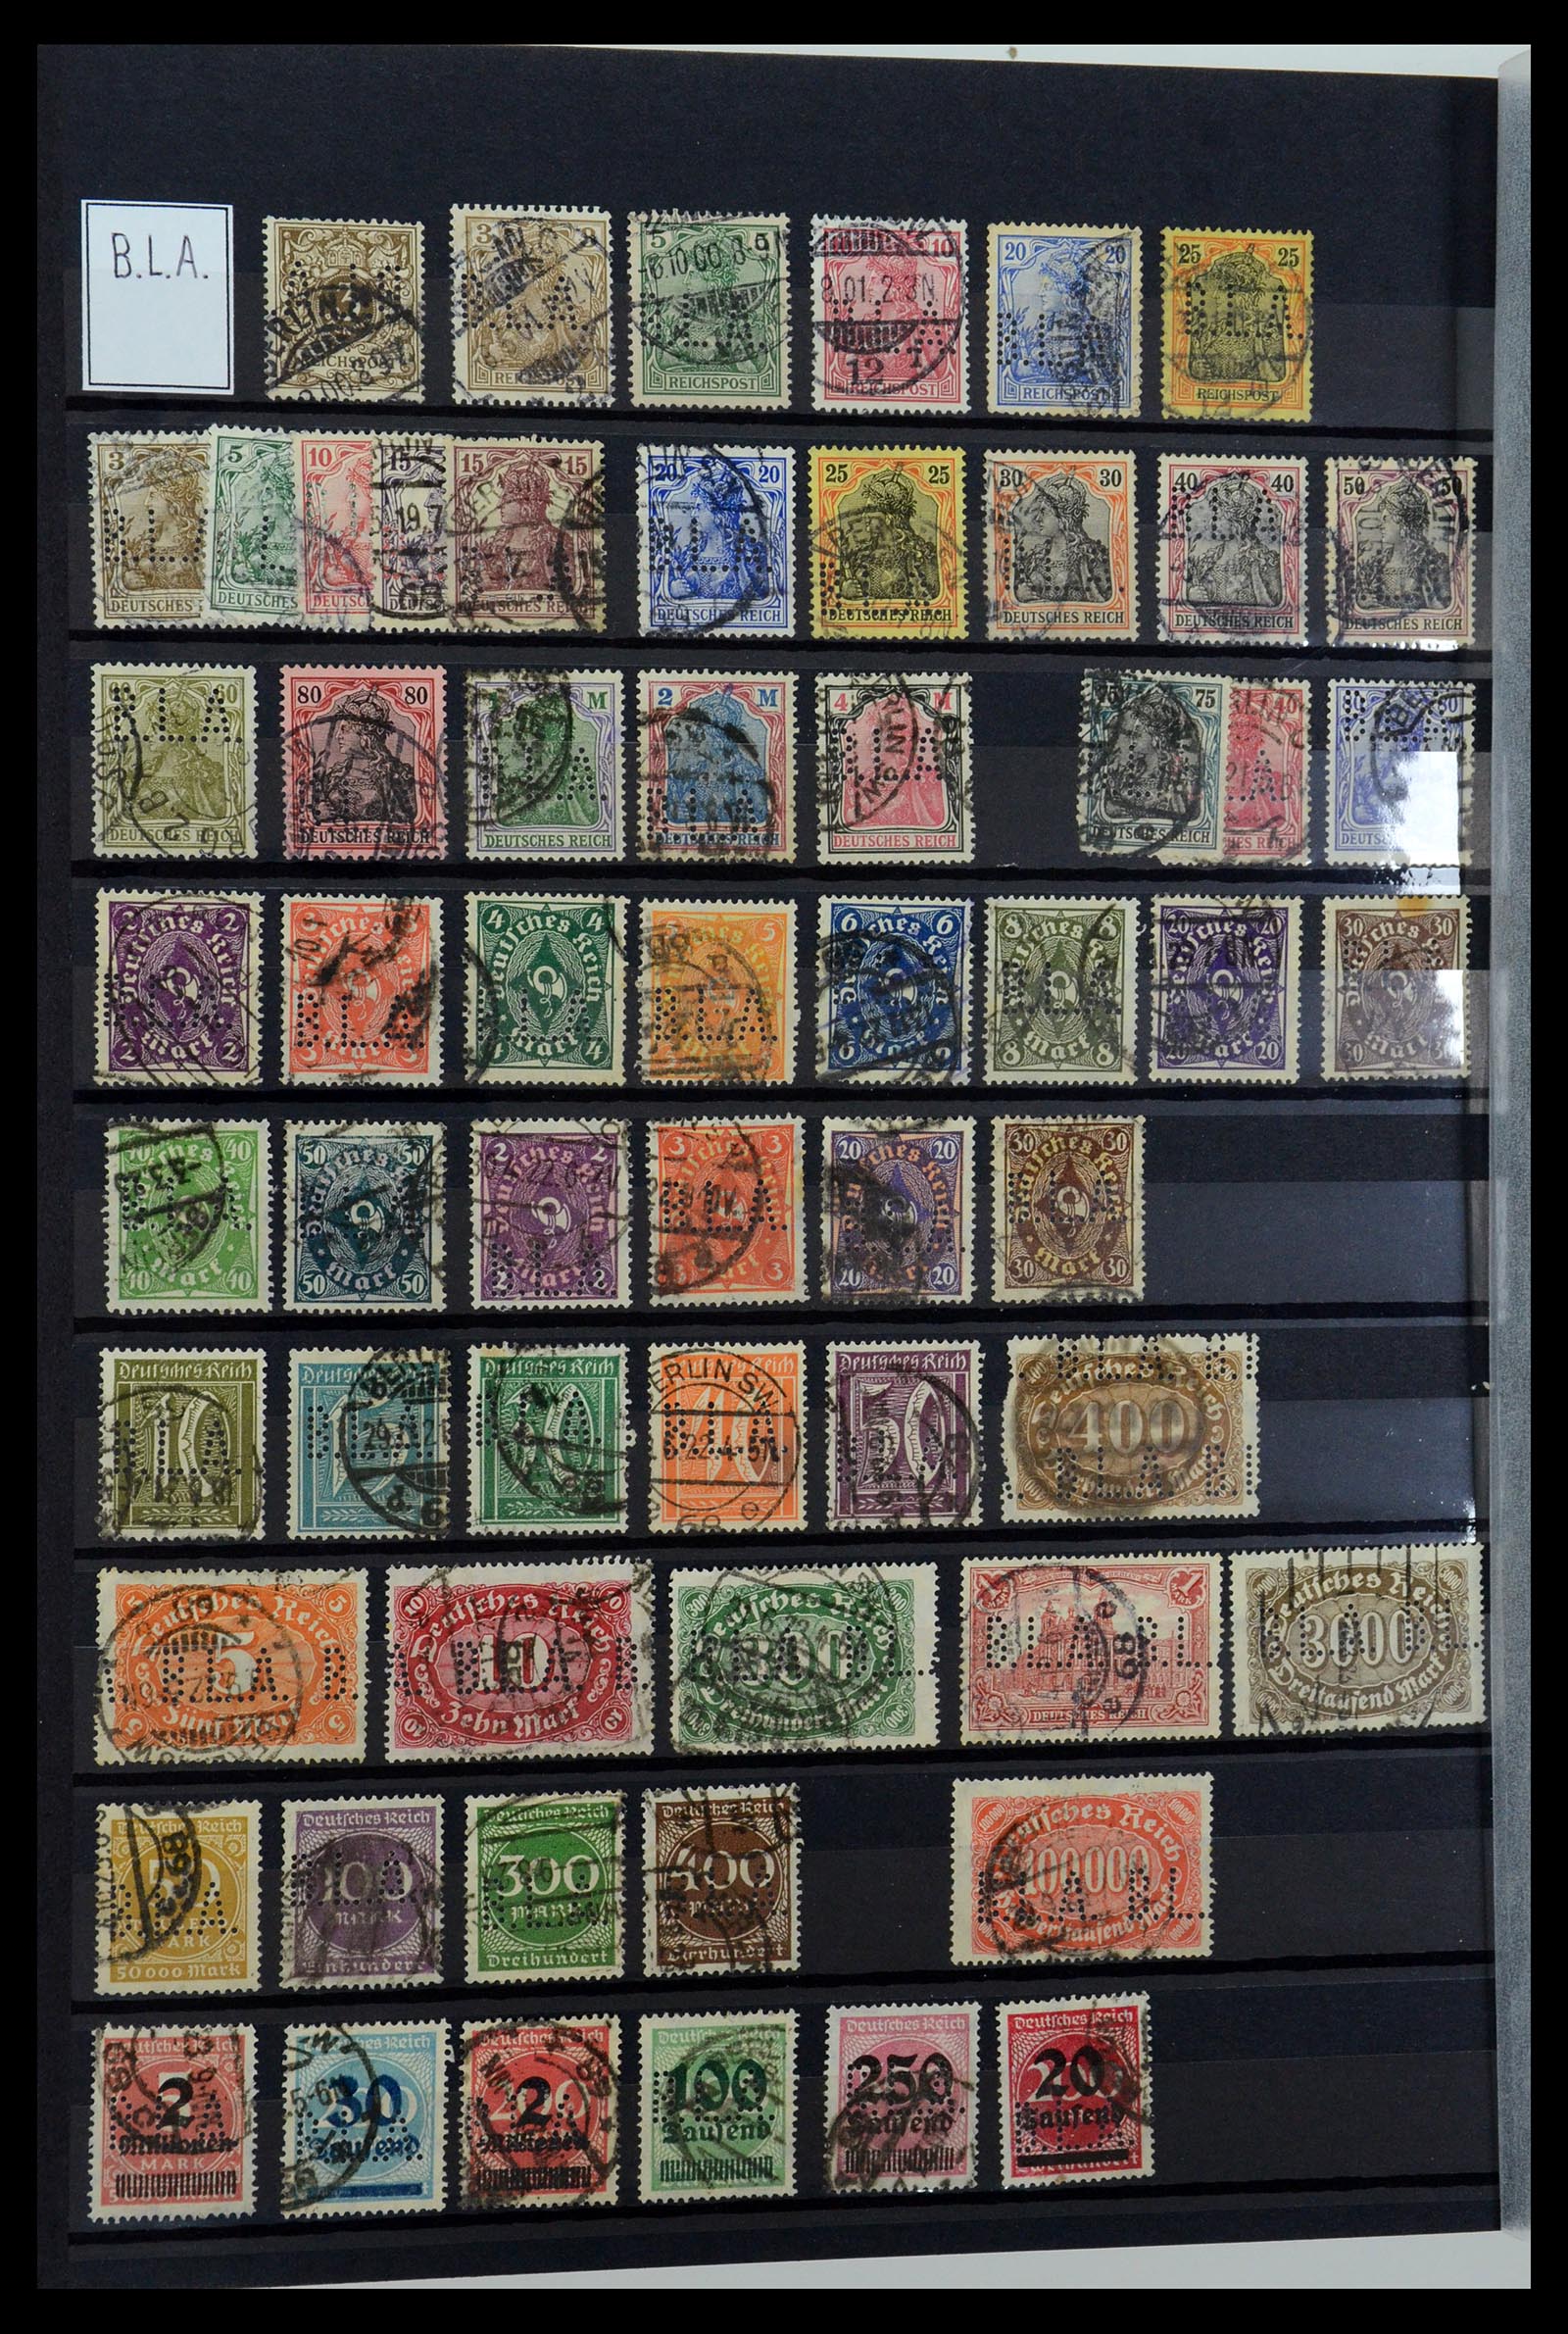 36405 045 - Stamp collection 36405 German Reich perfins 1880-1945.